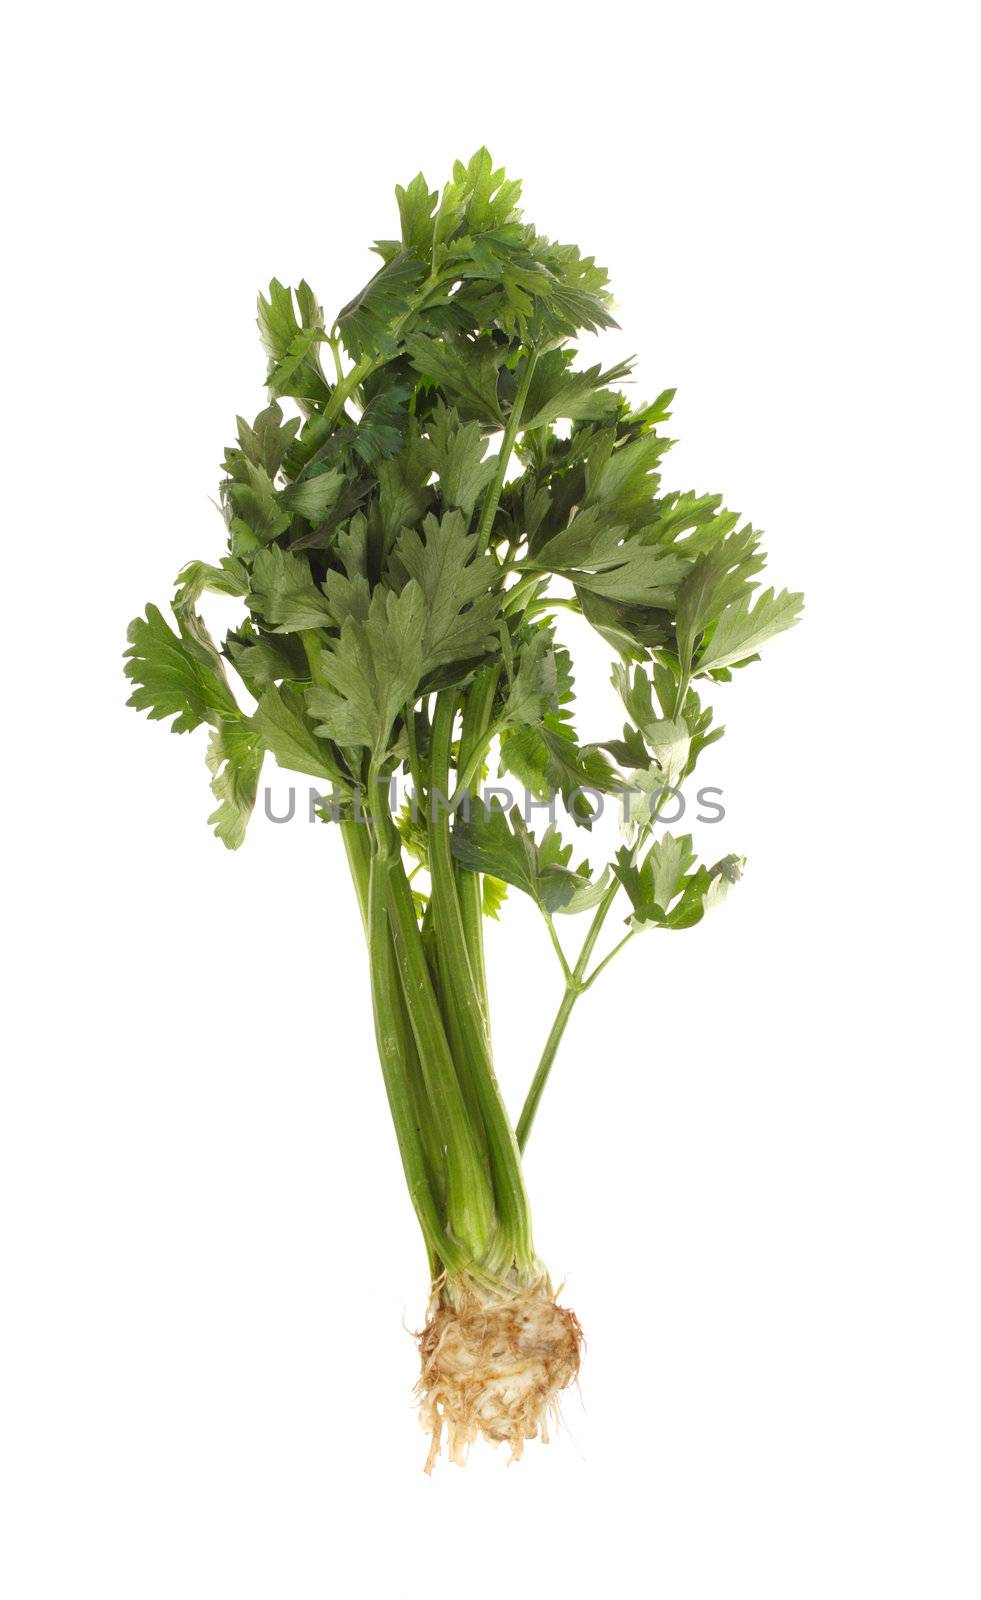 celery vegetable by aguirre_mar